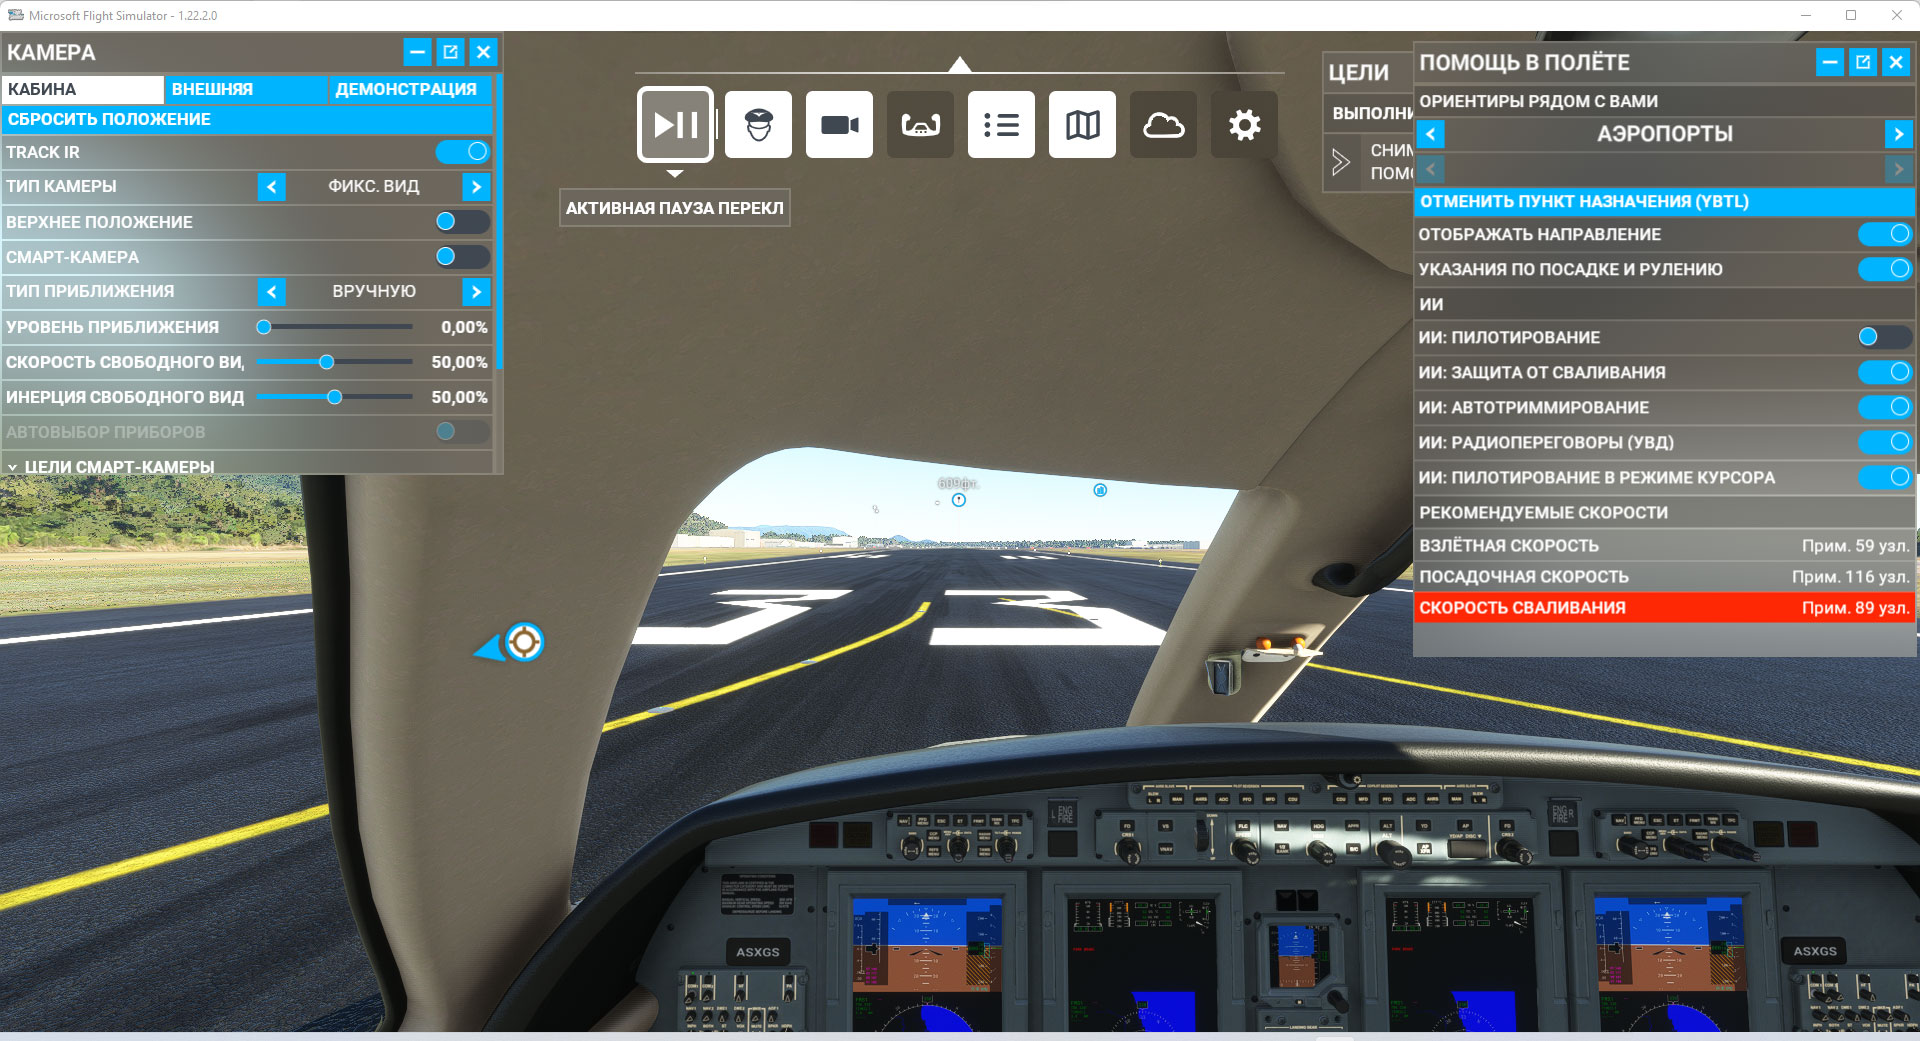 Меню с отмеченной кнопкой актвиная пауза. Обзор Microsoft Flight Simulator. Михаил Сапрыкин